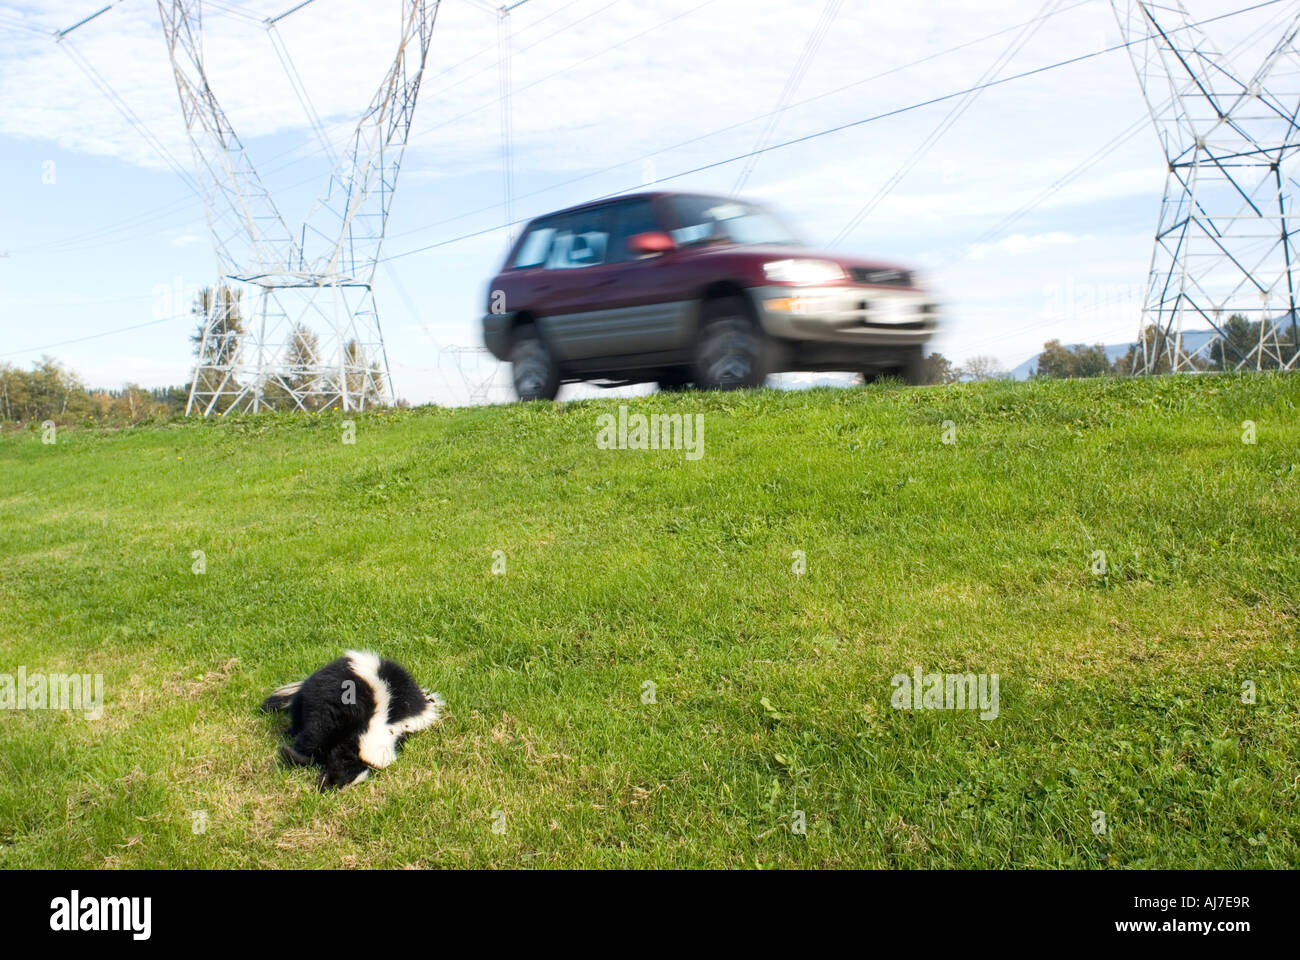 Dead skunk sentar al lado de la carretera después de ser golpeado por el vehículo Foto de stock